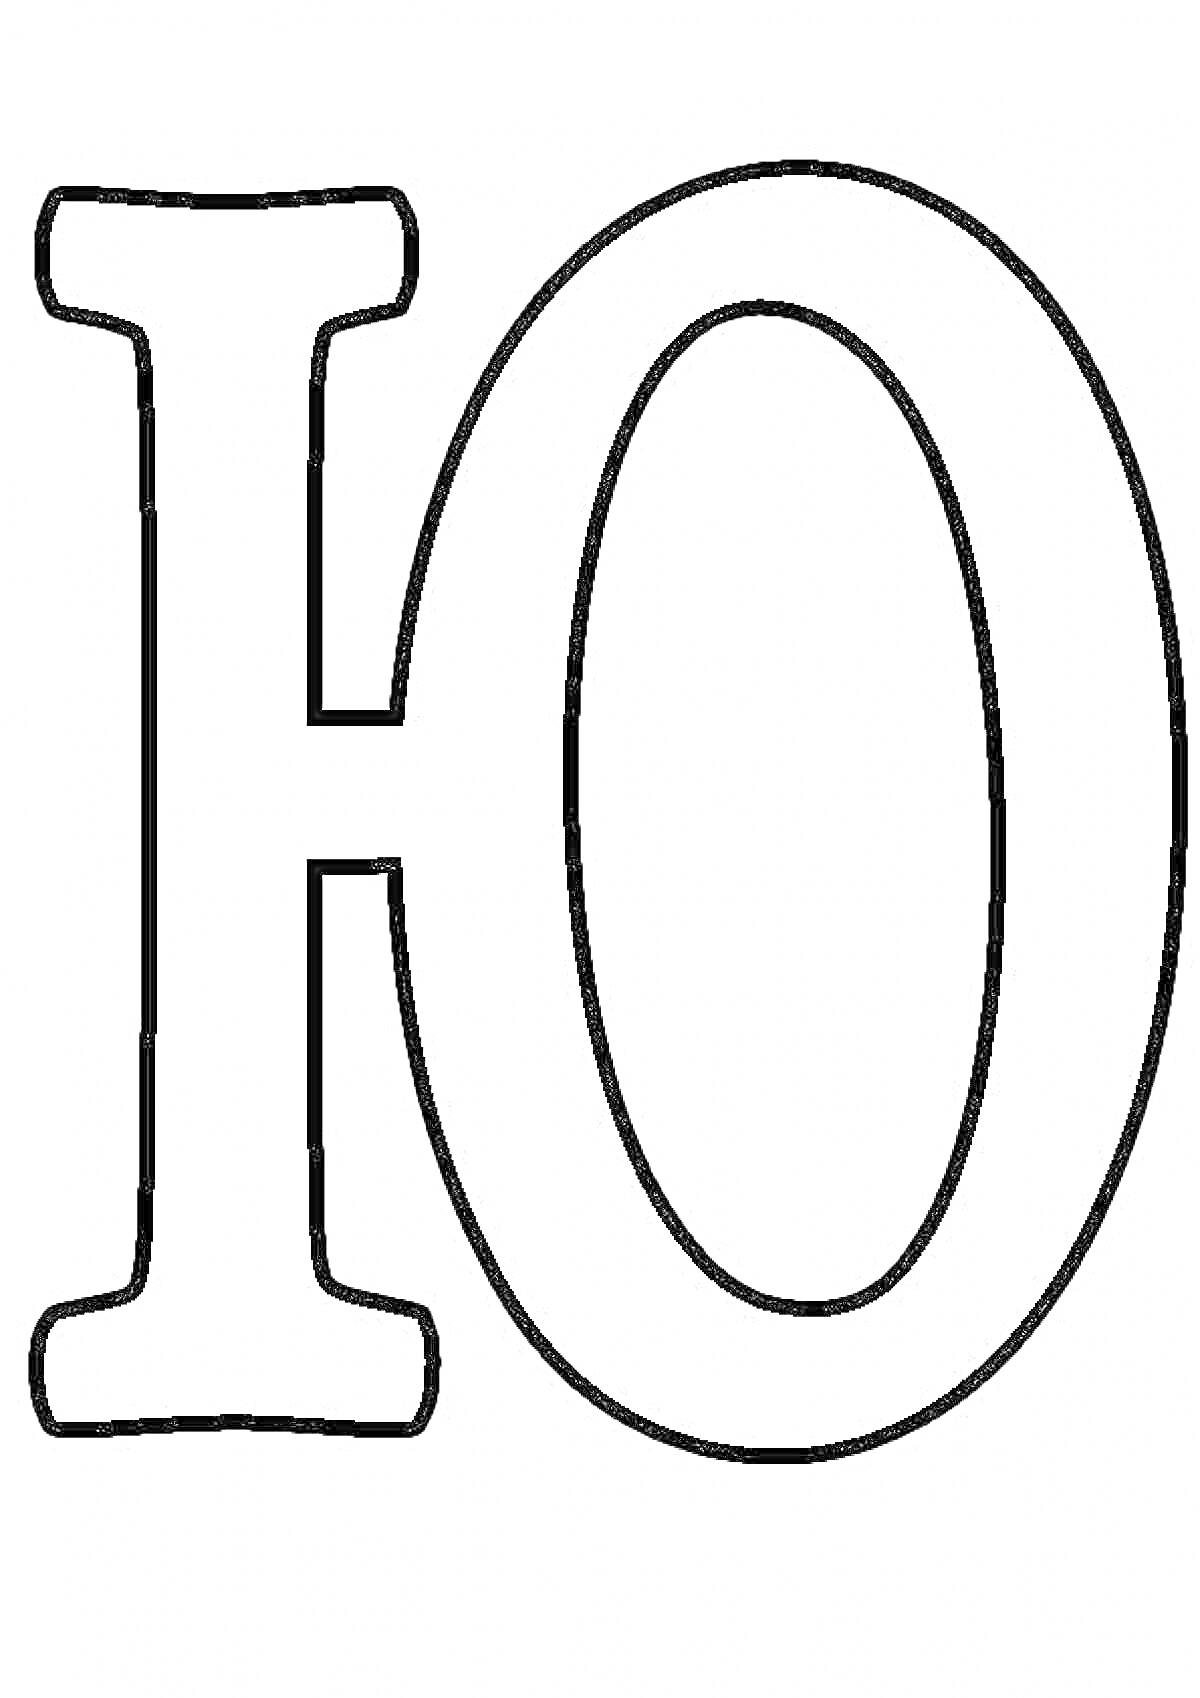 Раскраска Раскраска с изображением буквы Ю